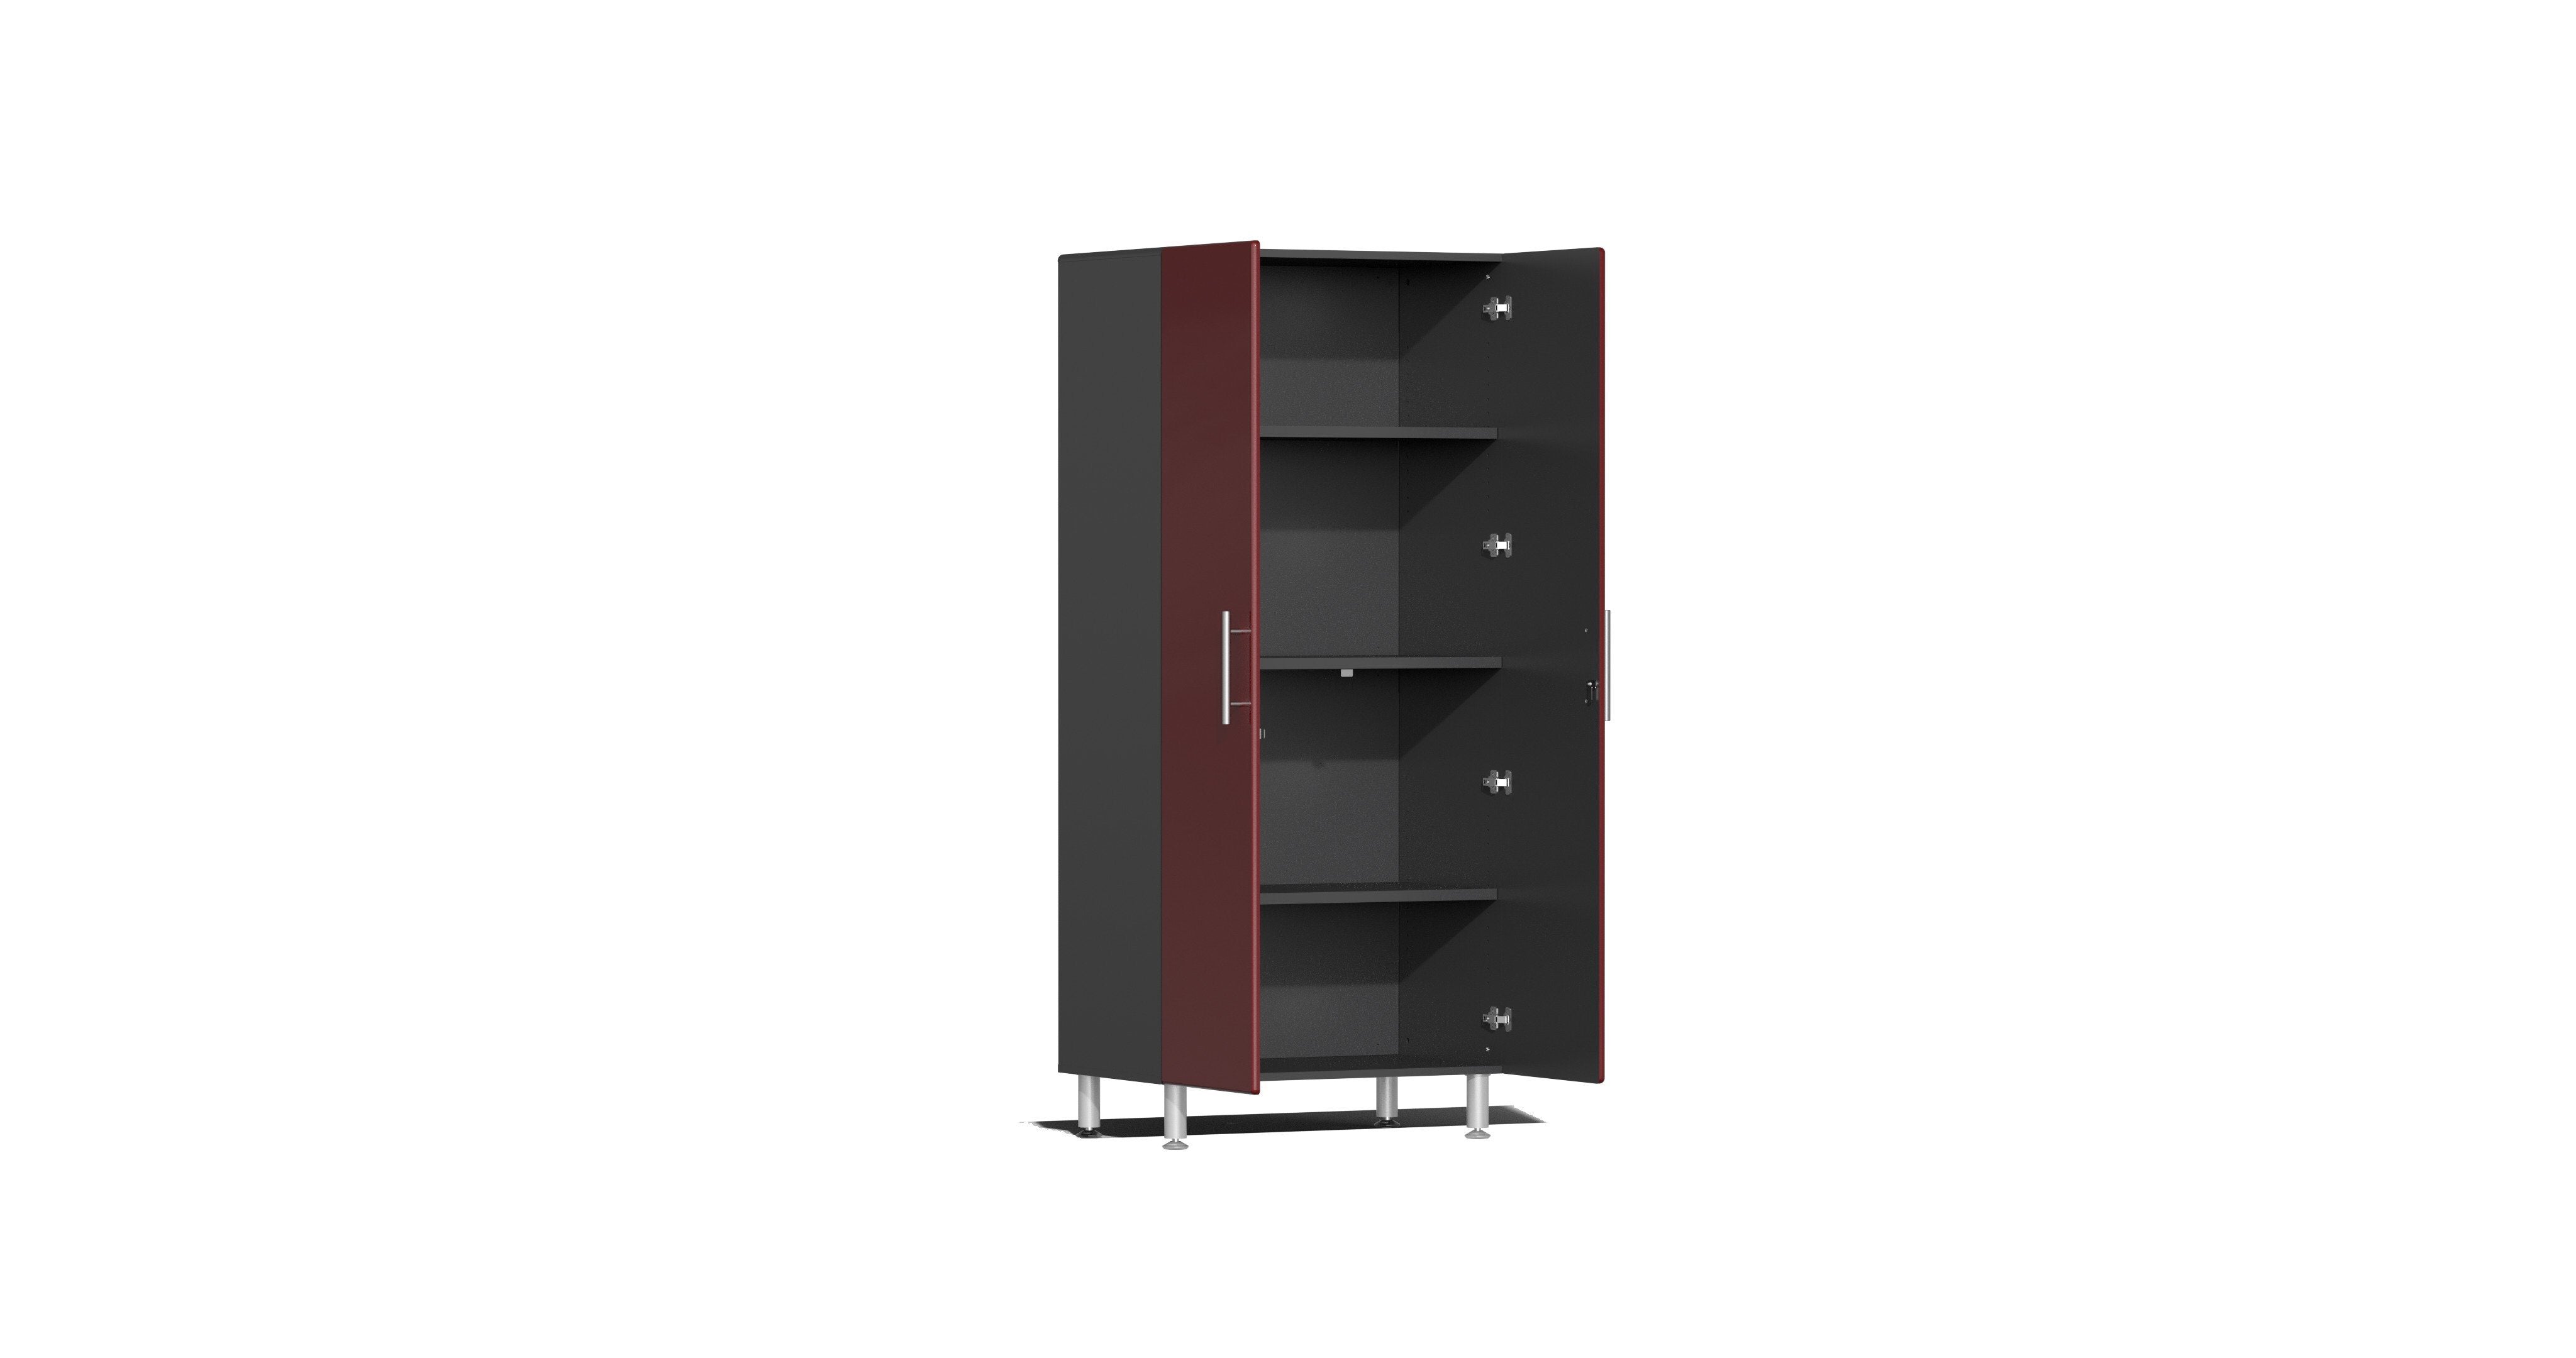 Ulti-Mate Garage - Premium Garage Cabinets & Storage Solutions — Garage  Department